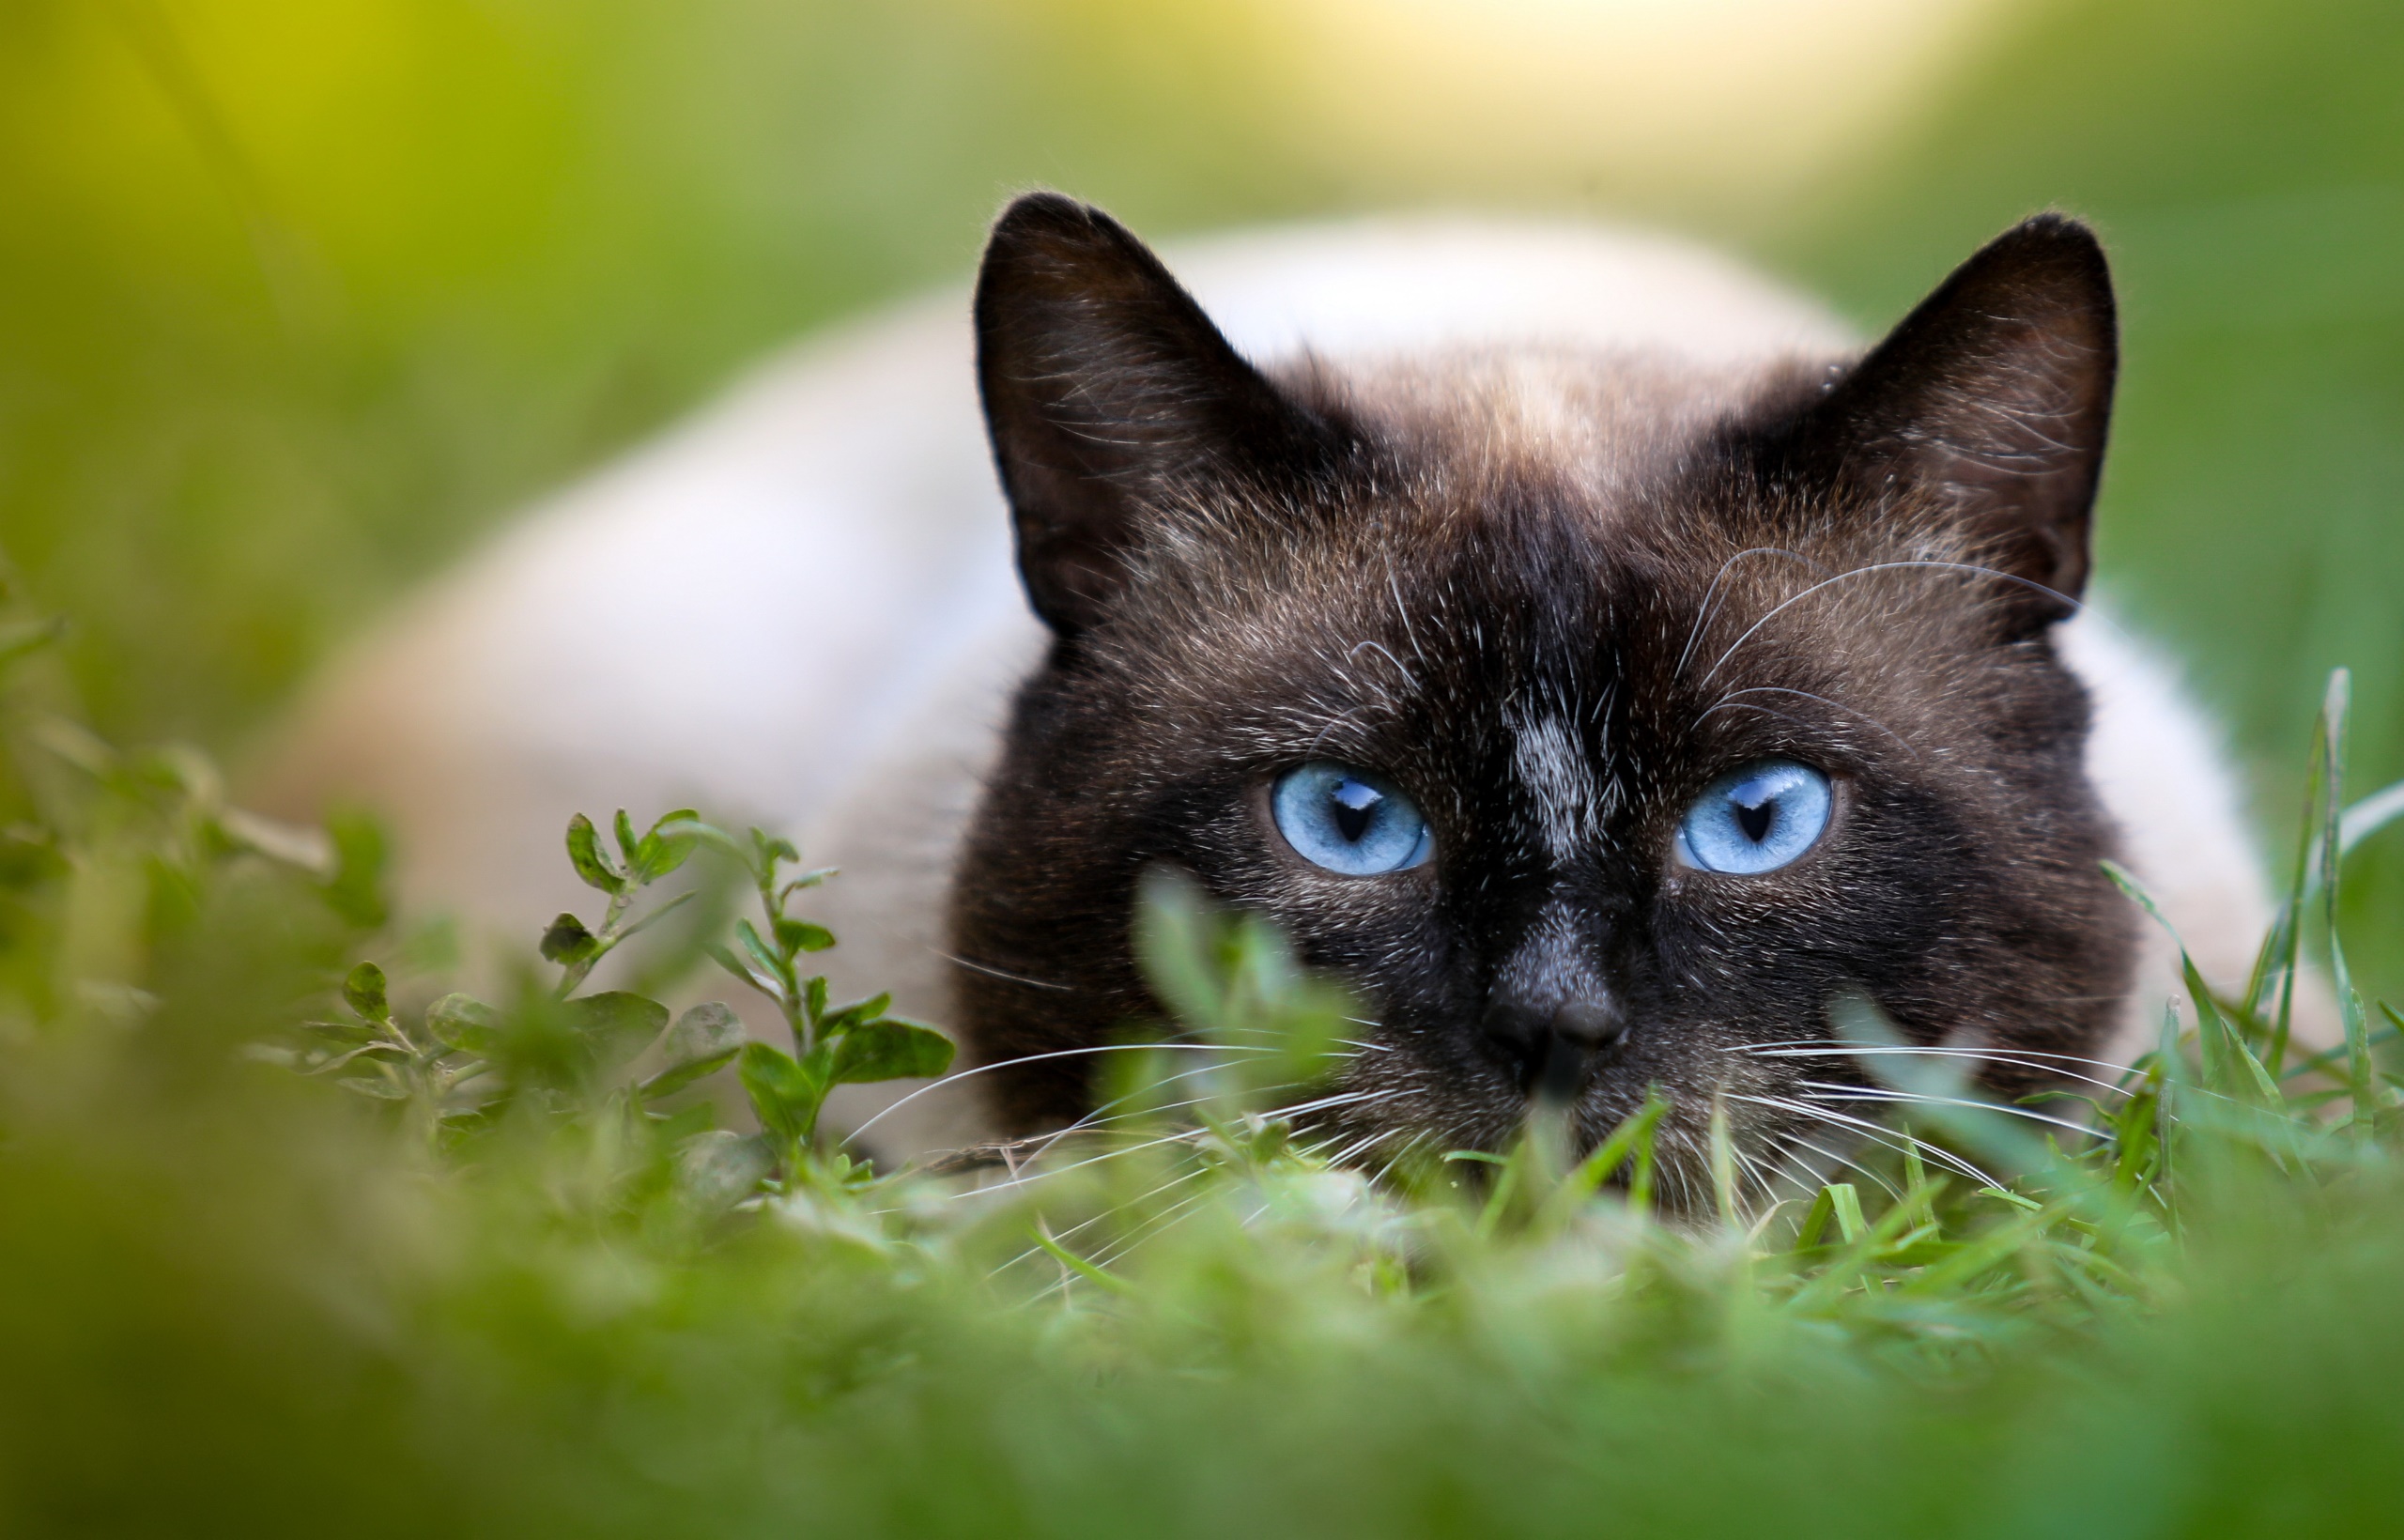 General 2560x1640 animals cats grass blue eyes green outdoors closeup